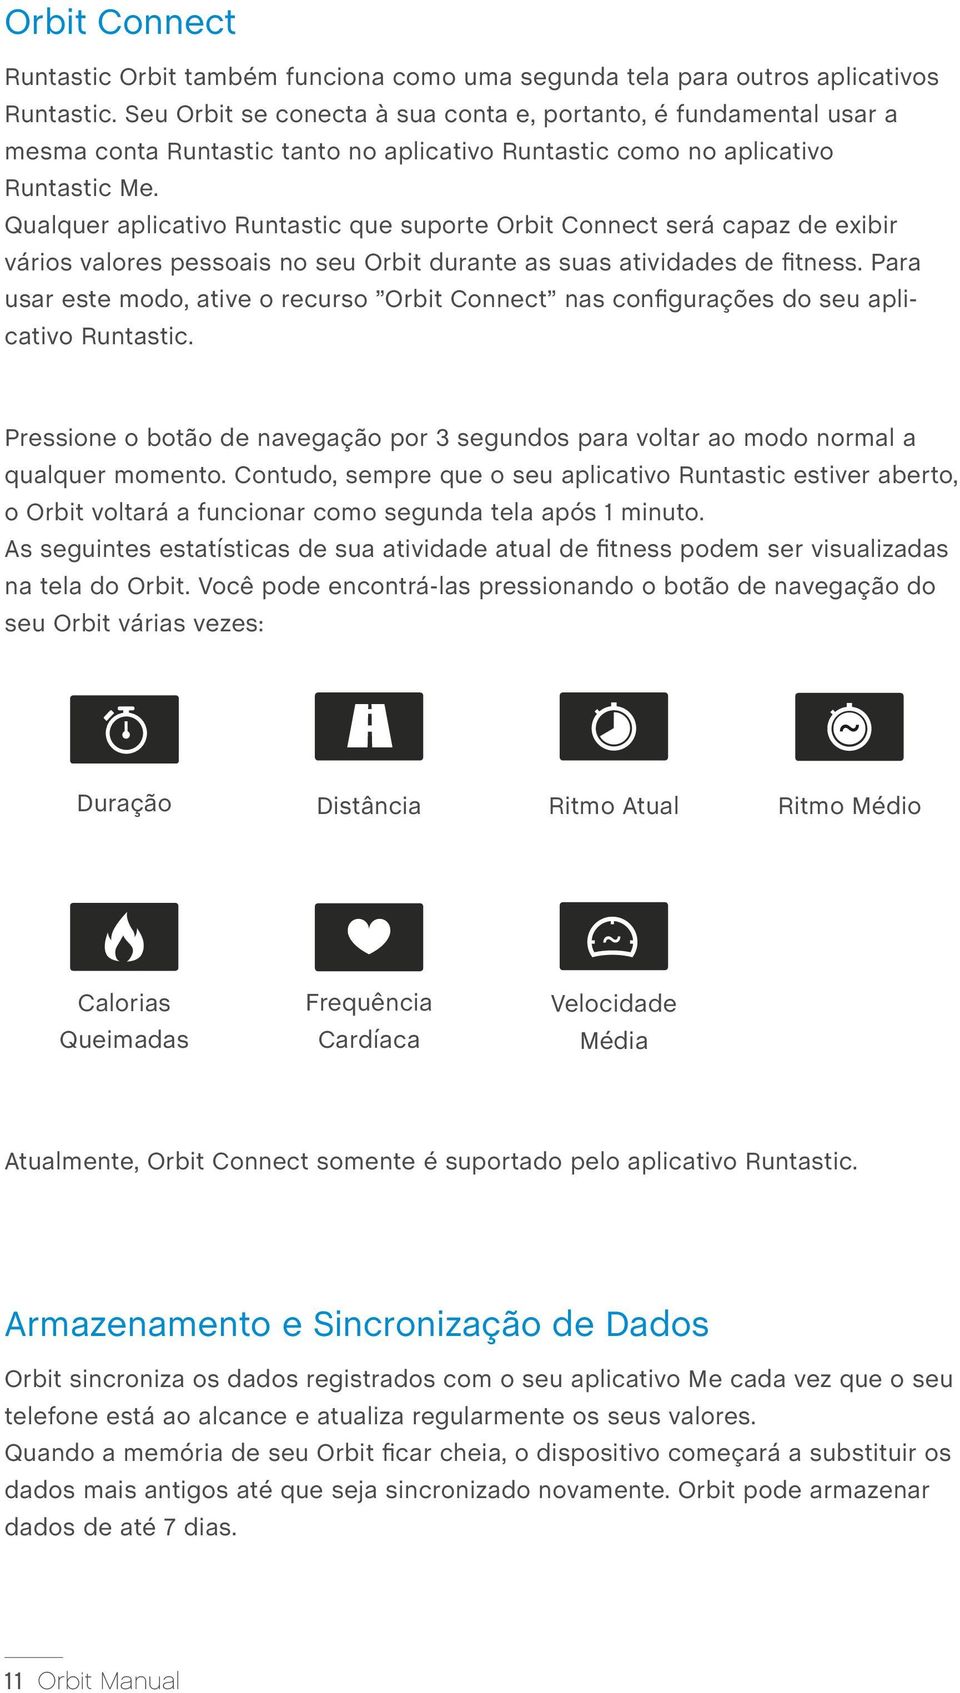 Qualquer aplicativo Runtastic que suporte Orbit Connect será capaz de exibir vários valores pessoais no seu Orbit durante as suas atividades de fitness.